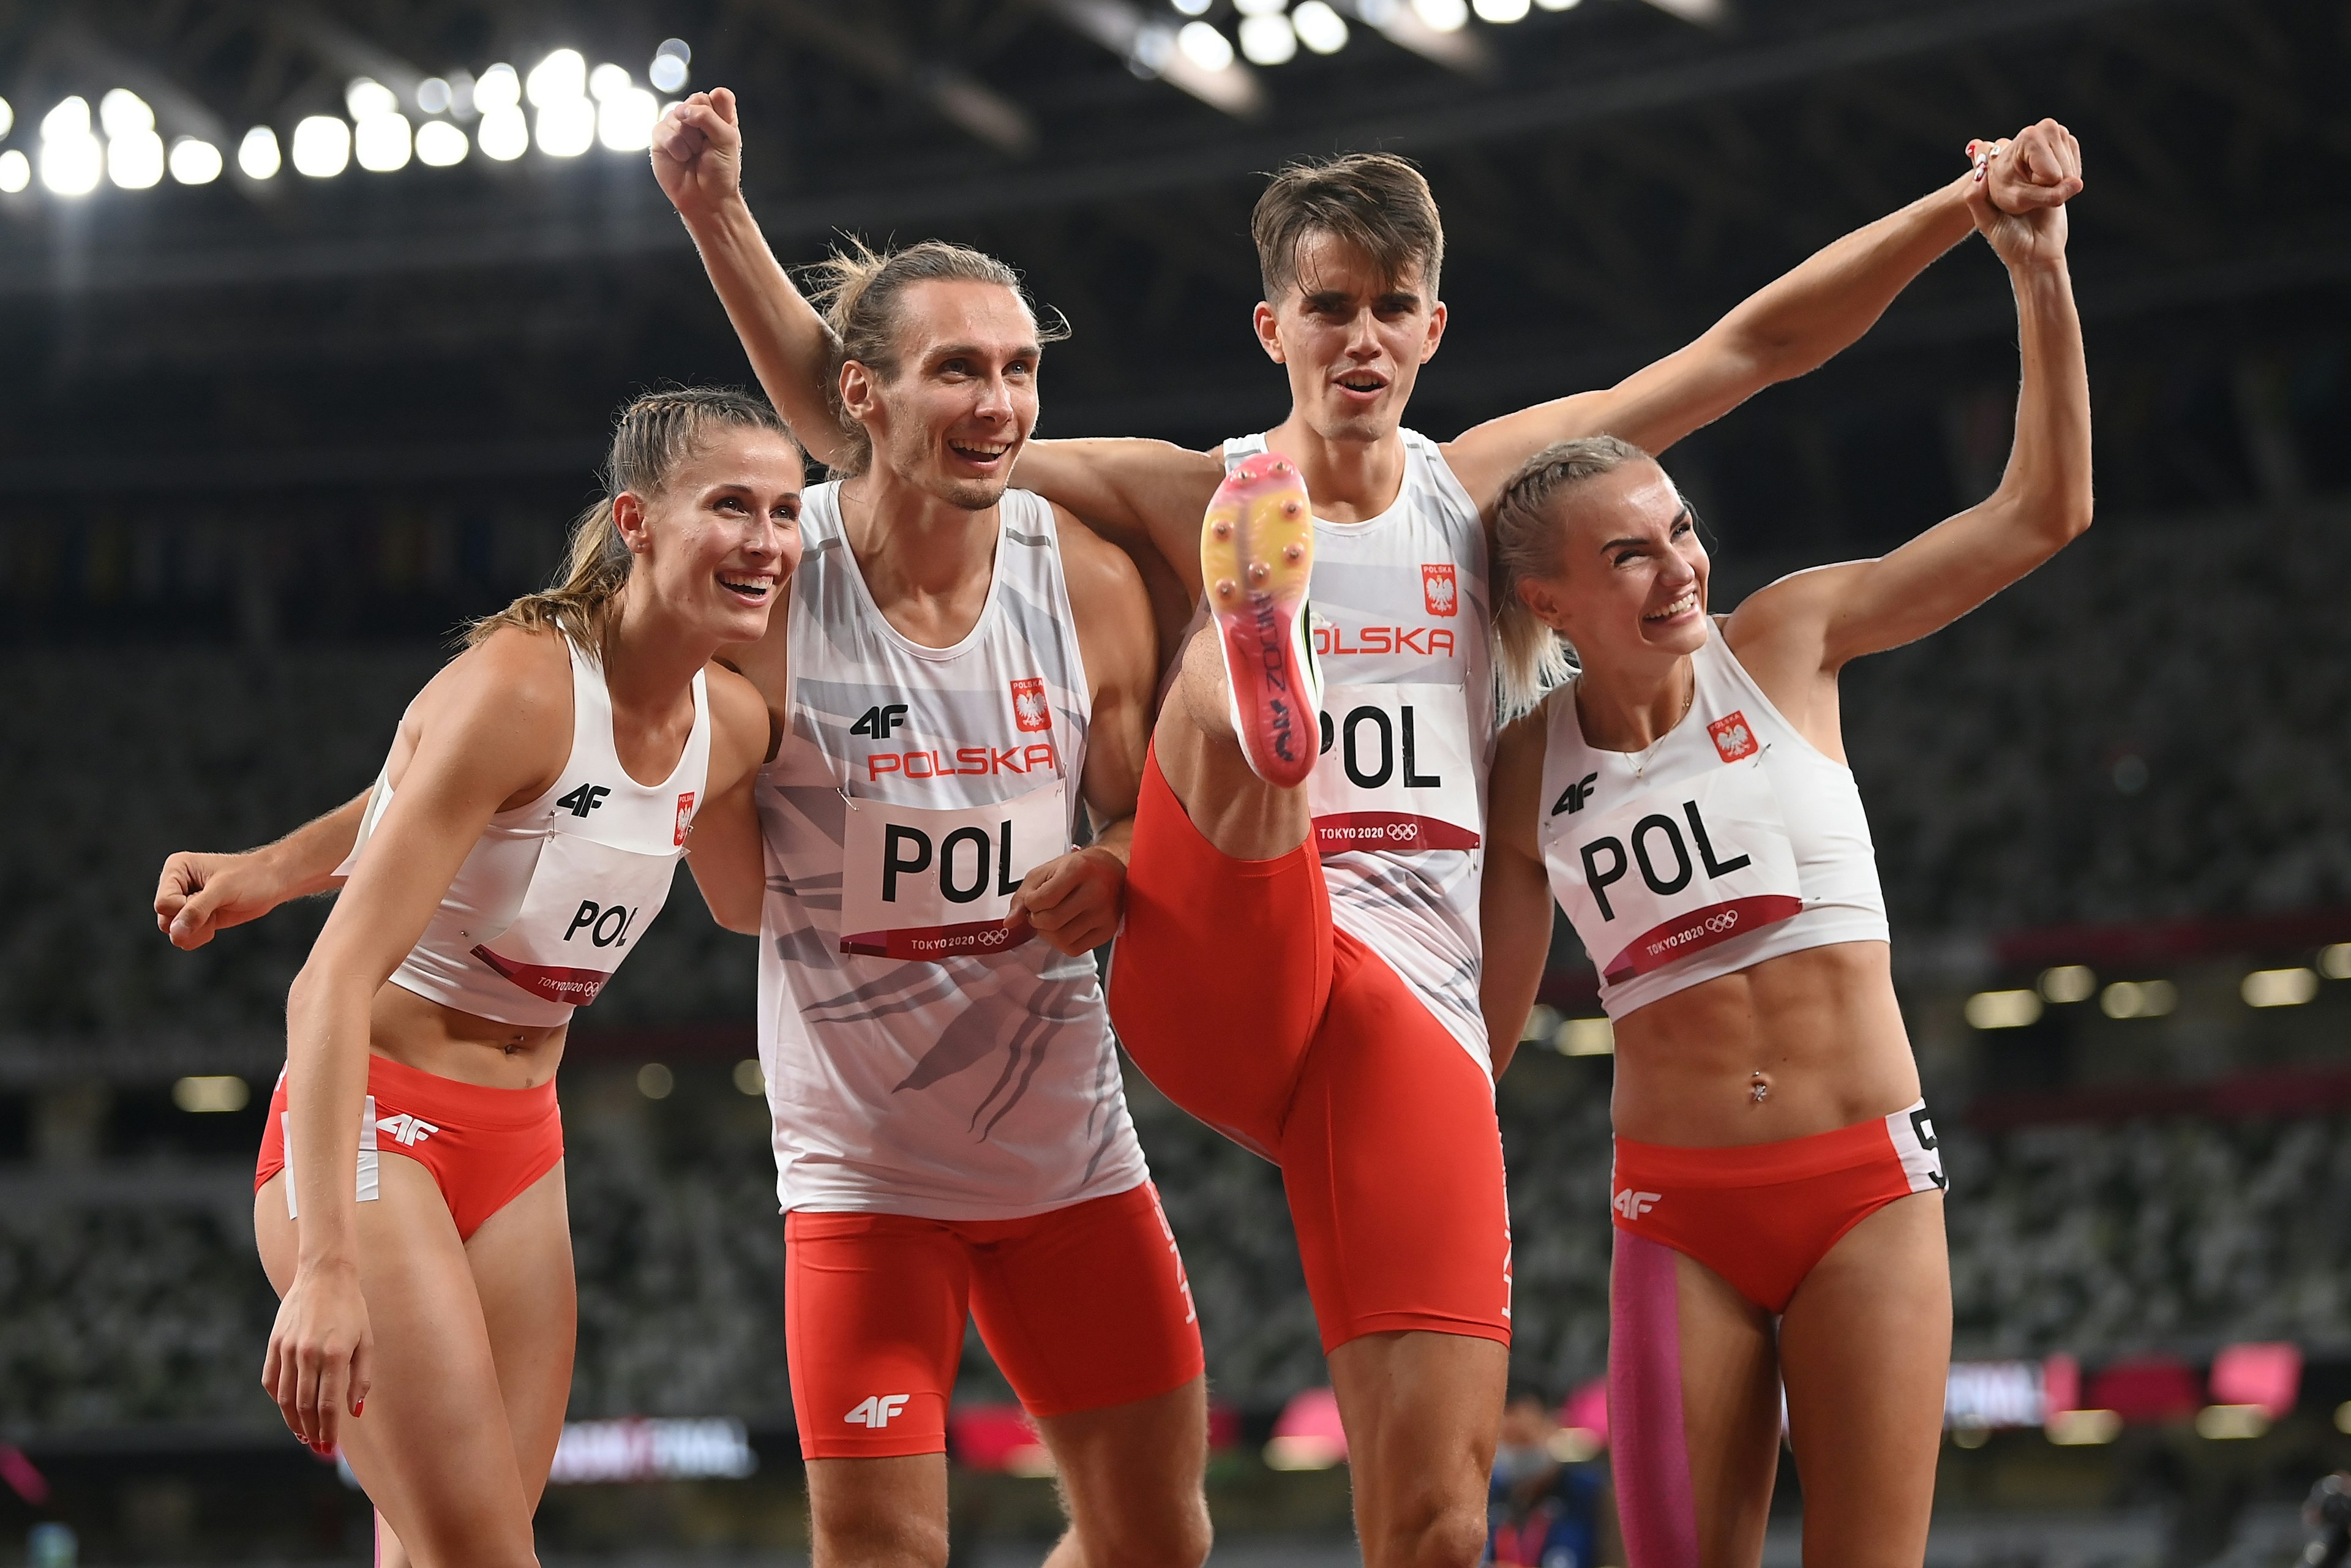 Igrzyska olimpijskie Tokio - Polska sztafeta mieszana